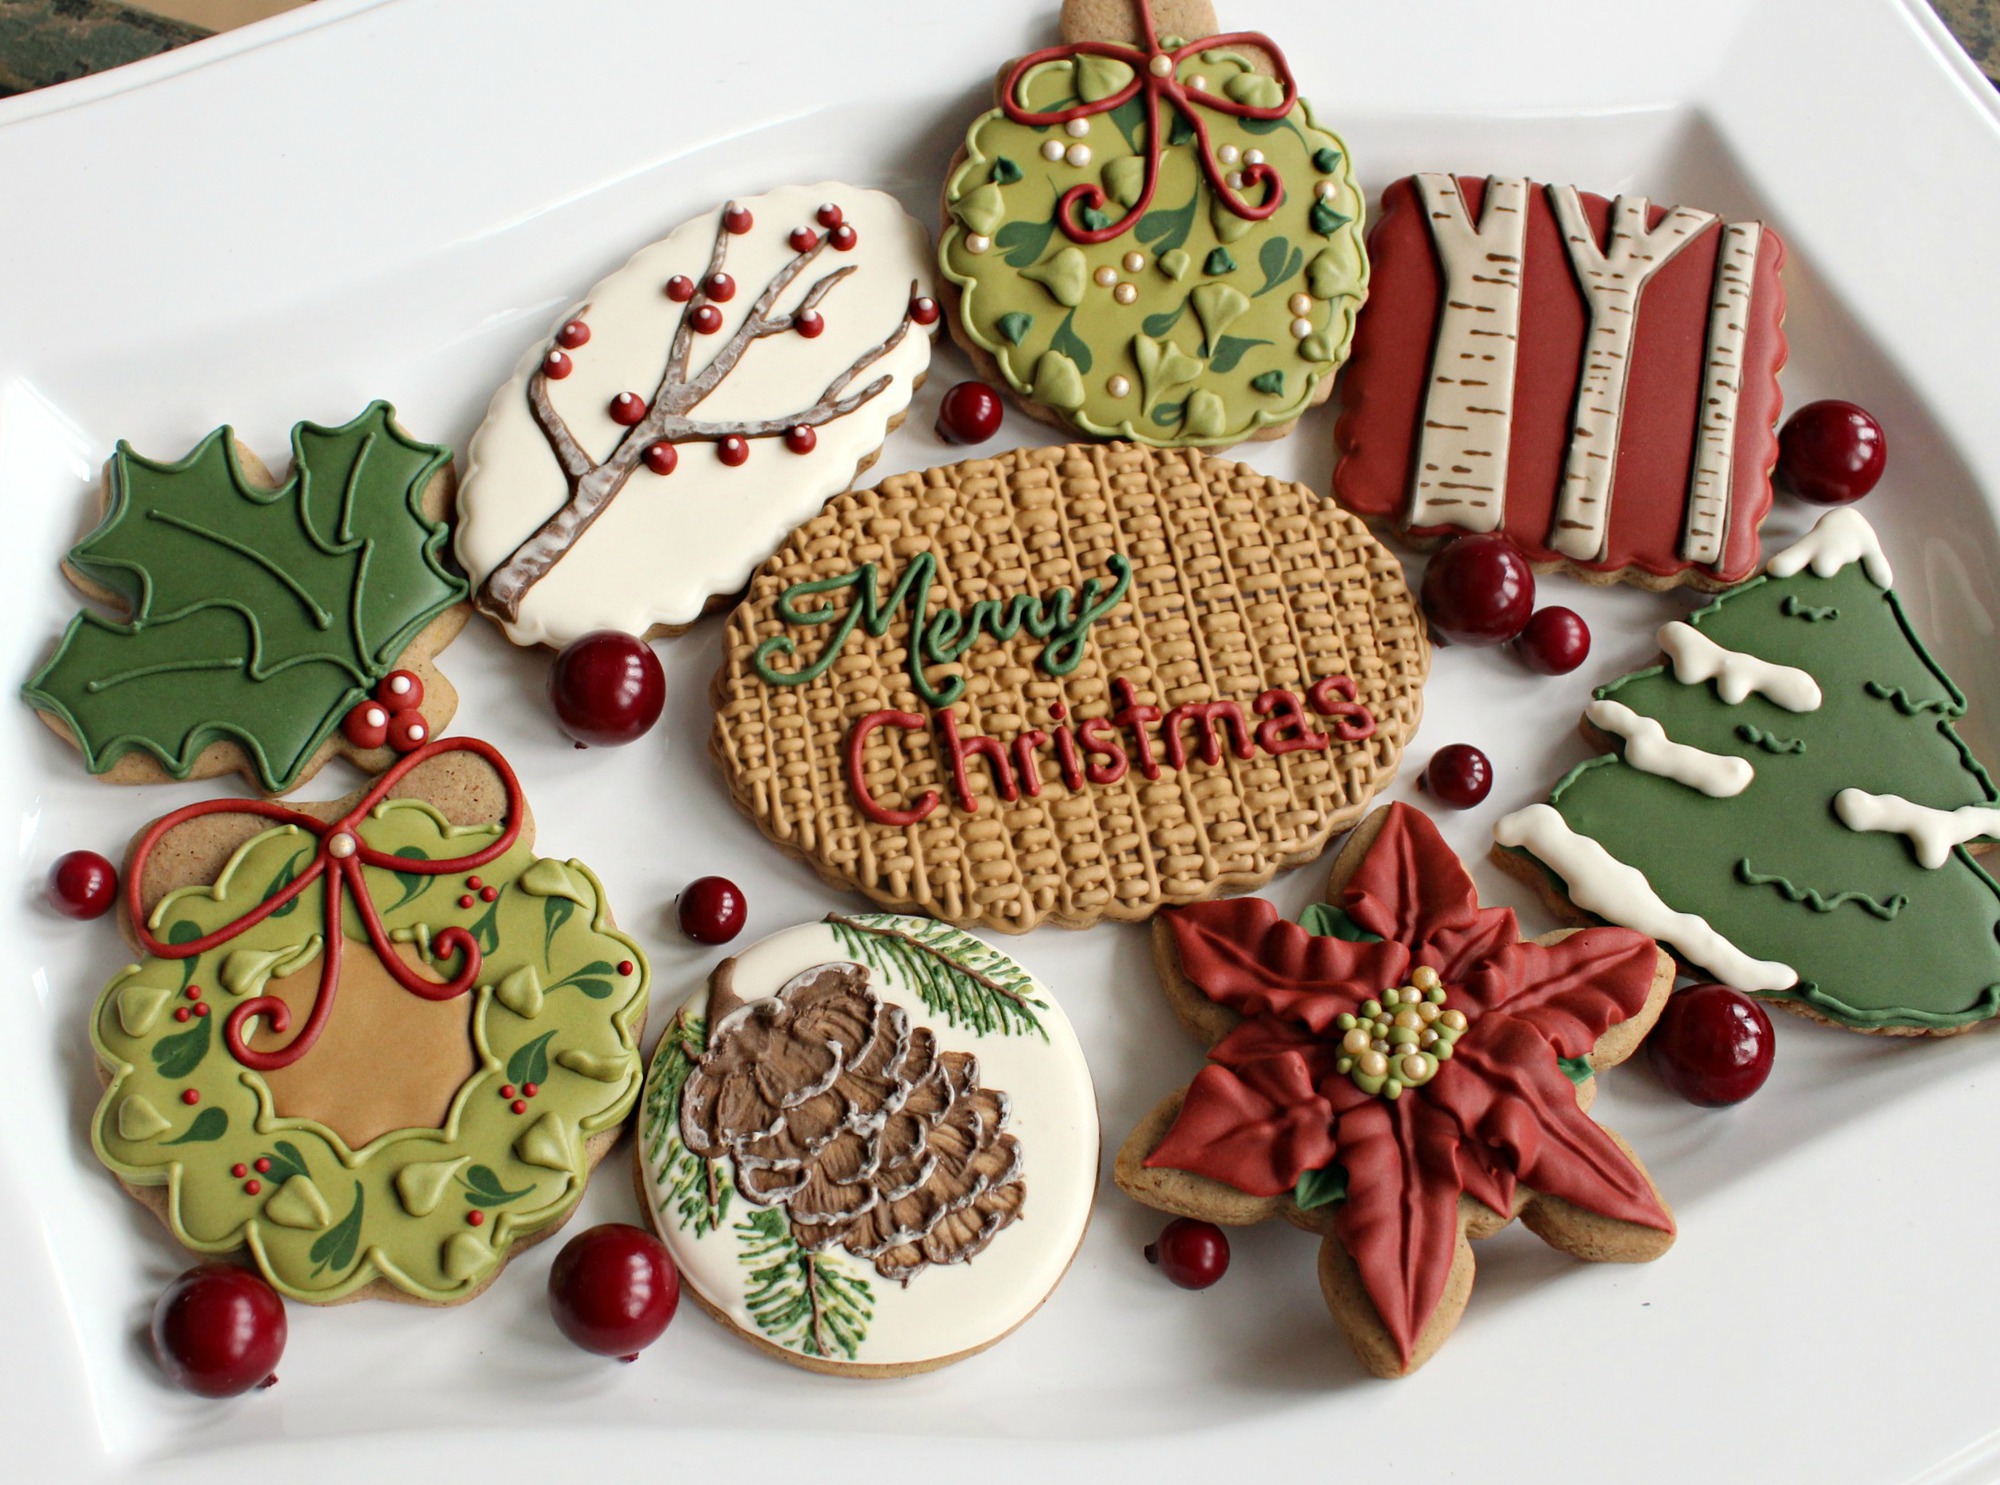 Ngắm những chiếc bánh quy vừa đẹp vừa ngon đặc biệt dành cho lễ Giáng sinh - Ảnh 6.